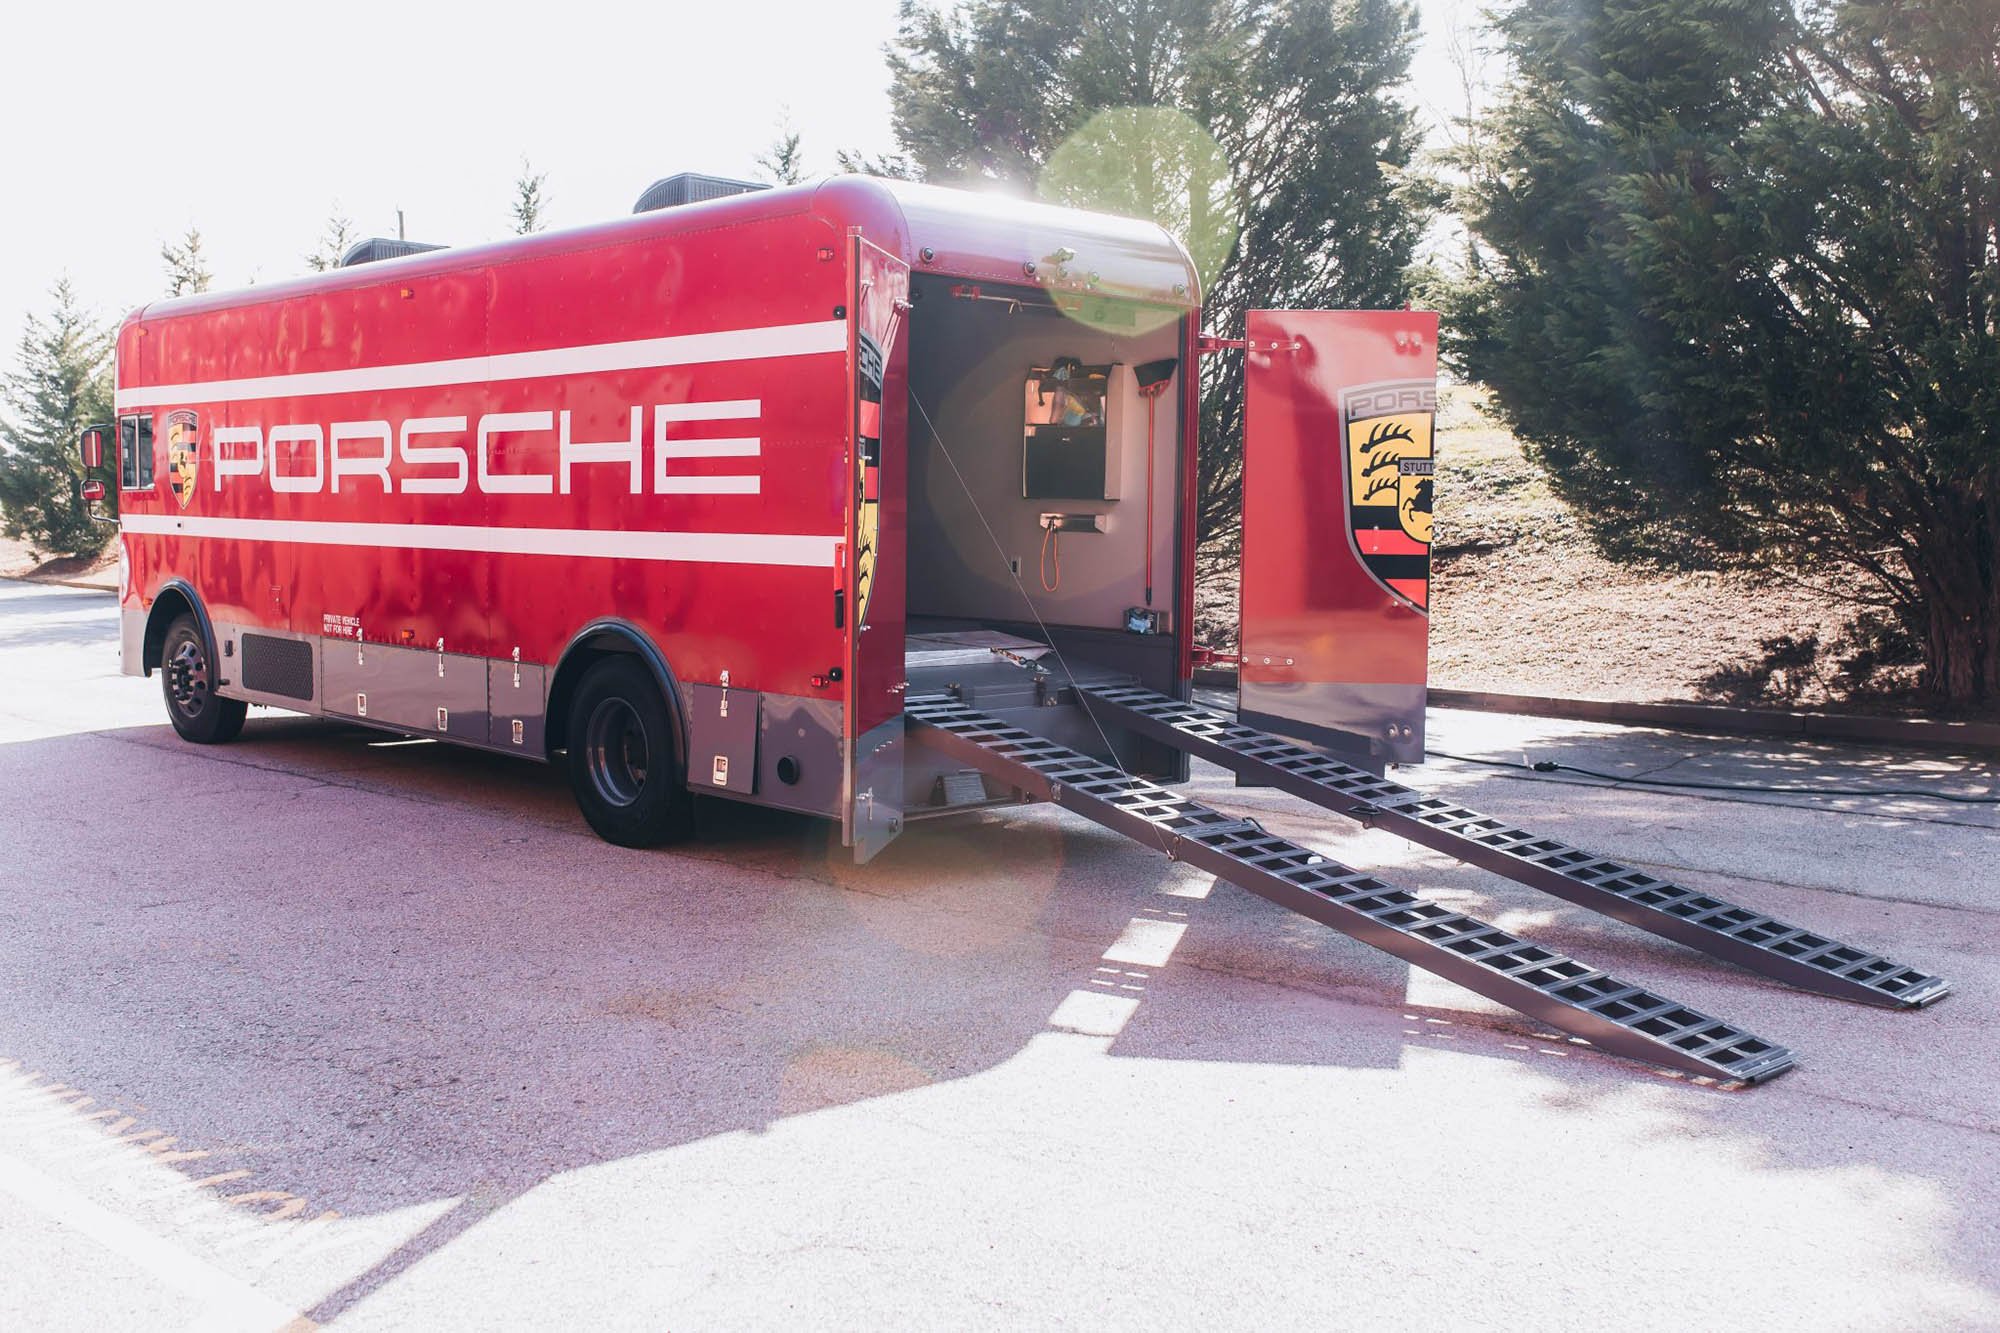 Kenneth-Midgett-Porsche-Bus-Restomod-18249-72268-scaled.jpg